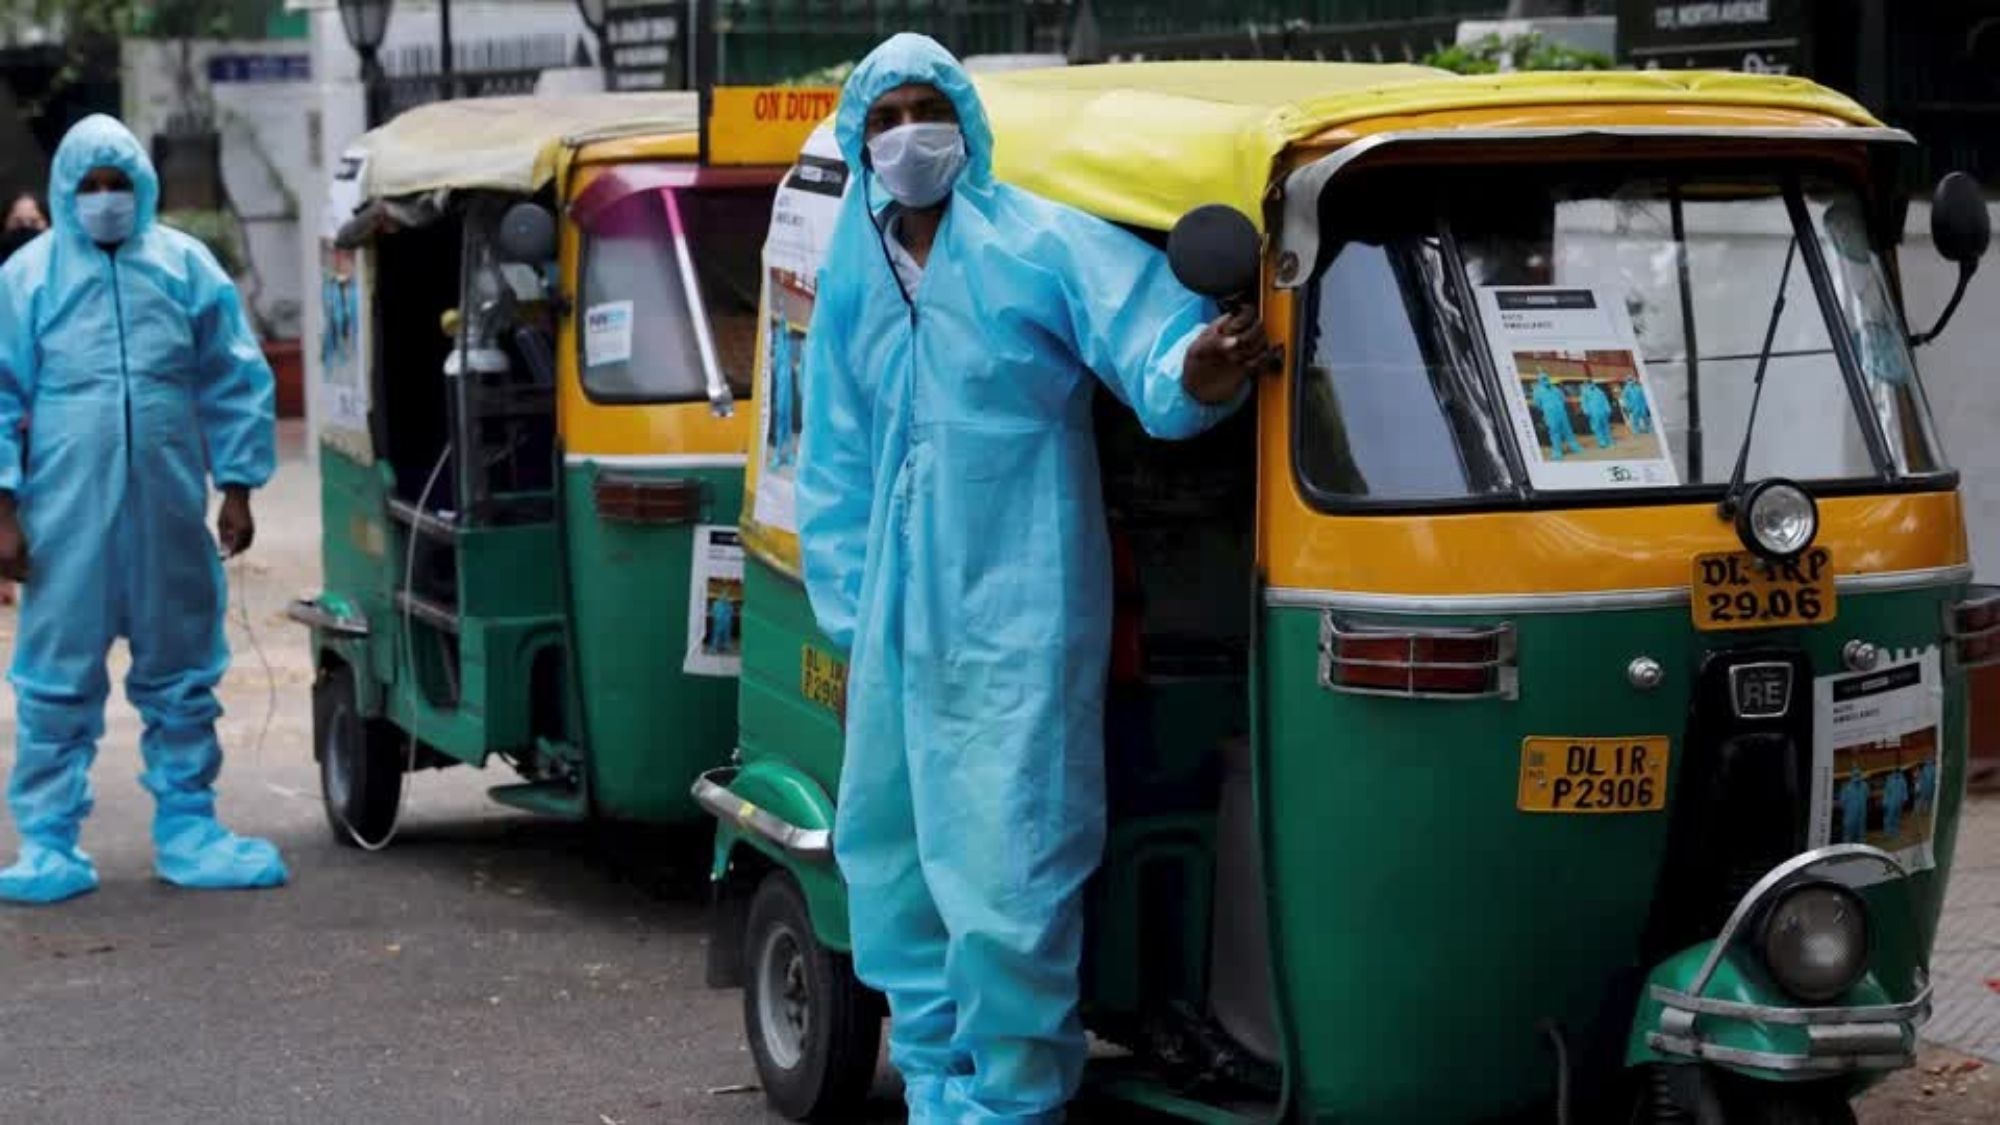 As India’s Covid-19 surge continues, rickshaws become makeshift ambulances